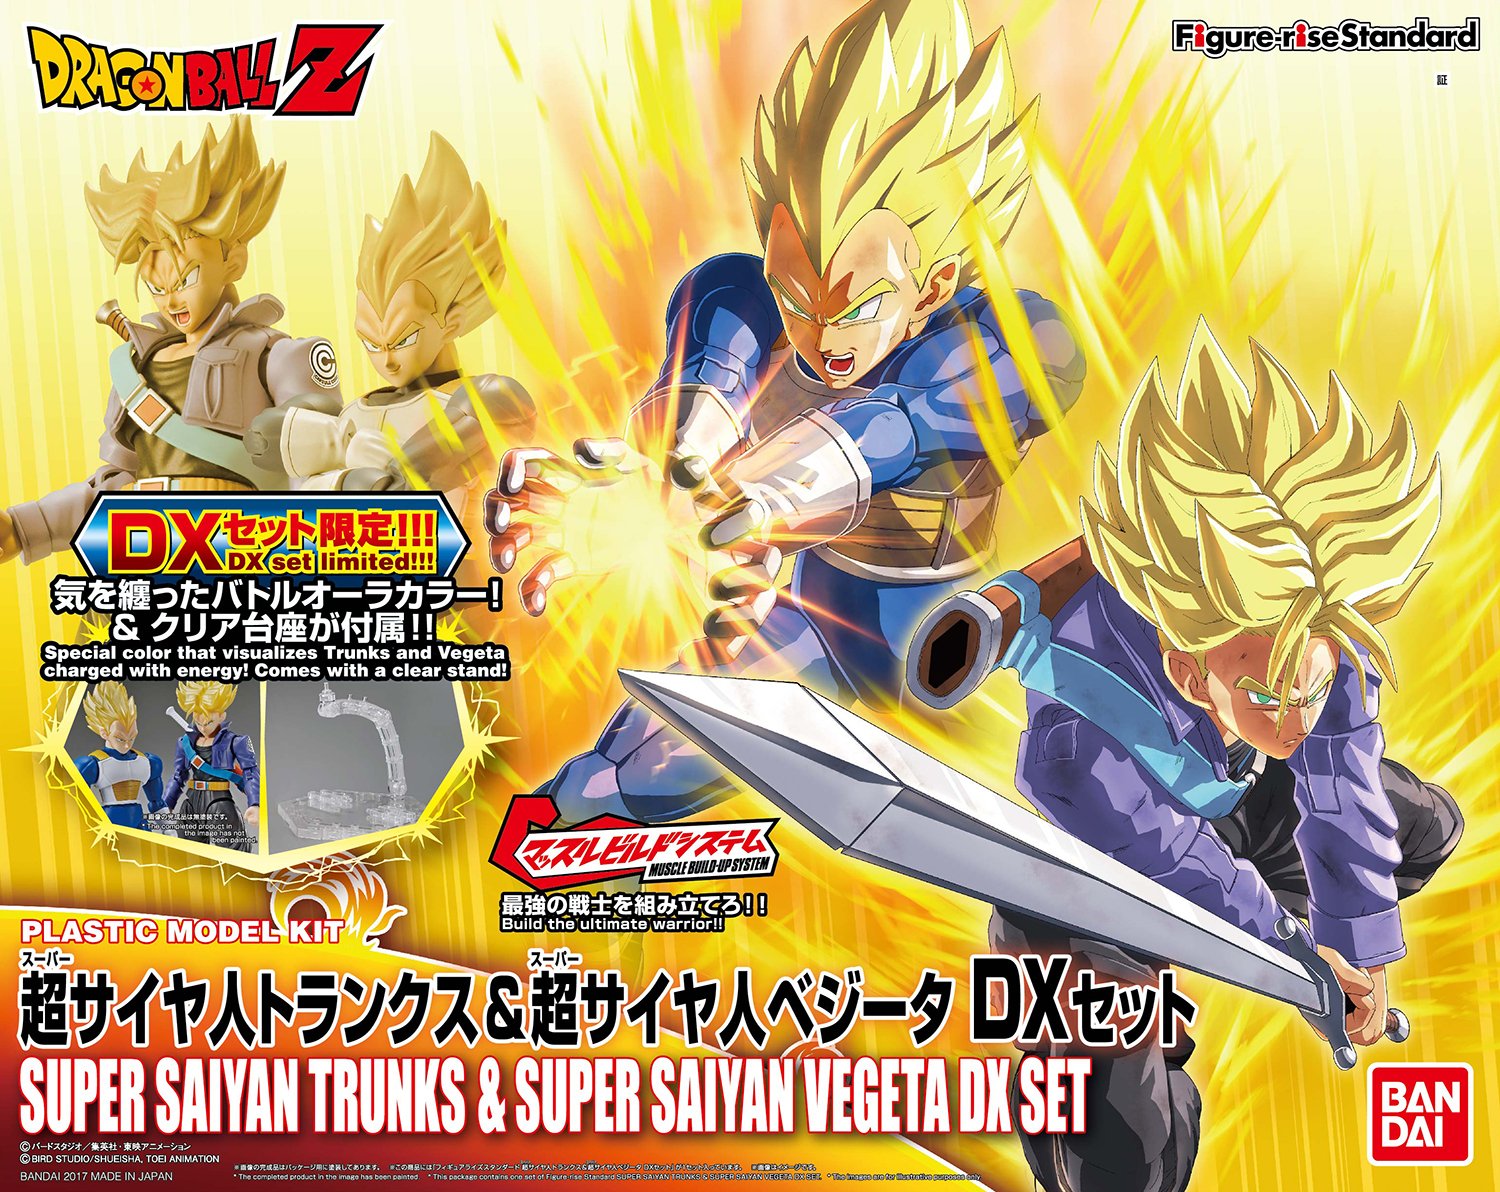 Figure-rise Standard - Super Saiyan Trunks & Super Saiyan Vegeta DX Set